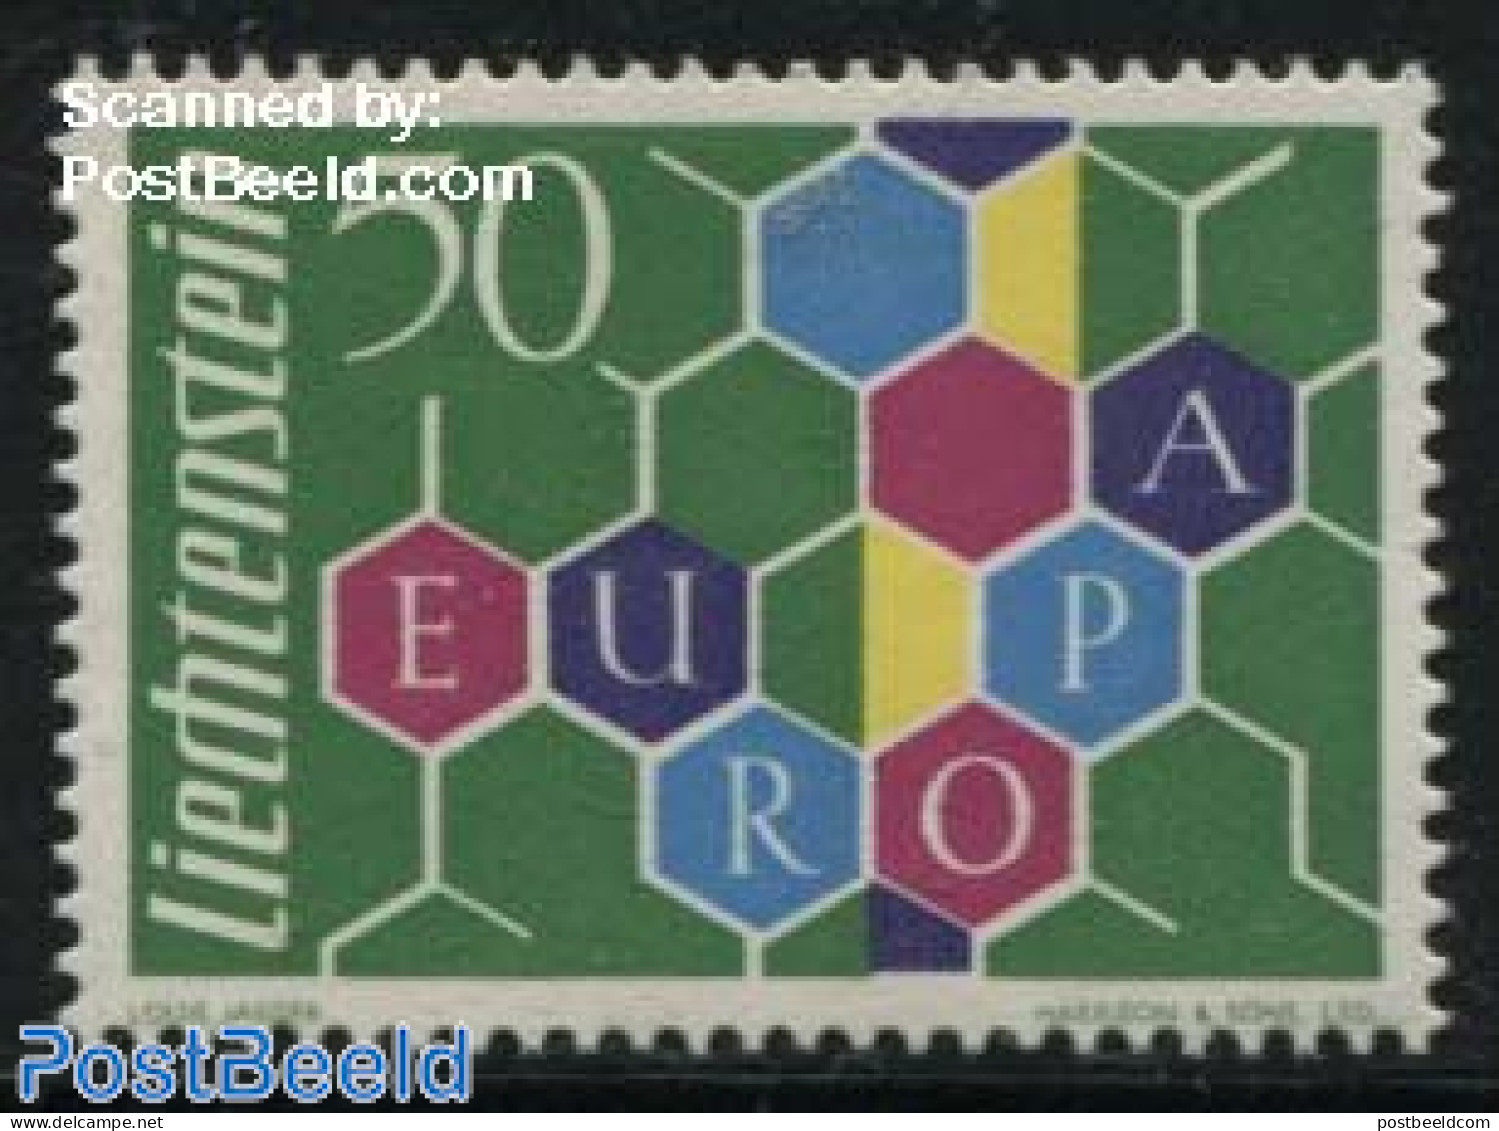 Liechtenstein 1960 Europa 1v, Mint NH, History - Europa (cept) - Ungebraucht